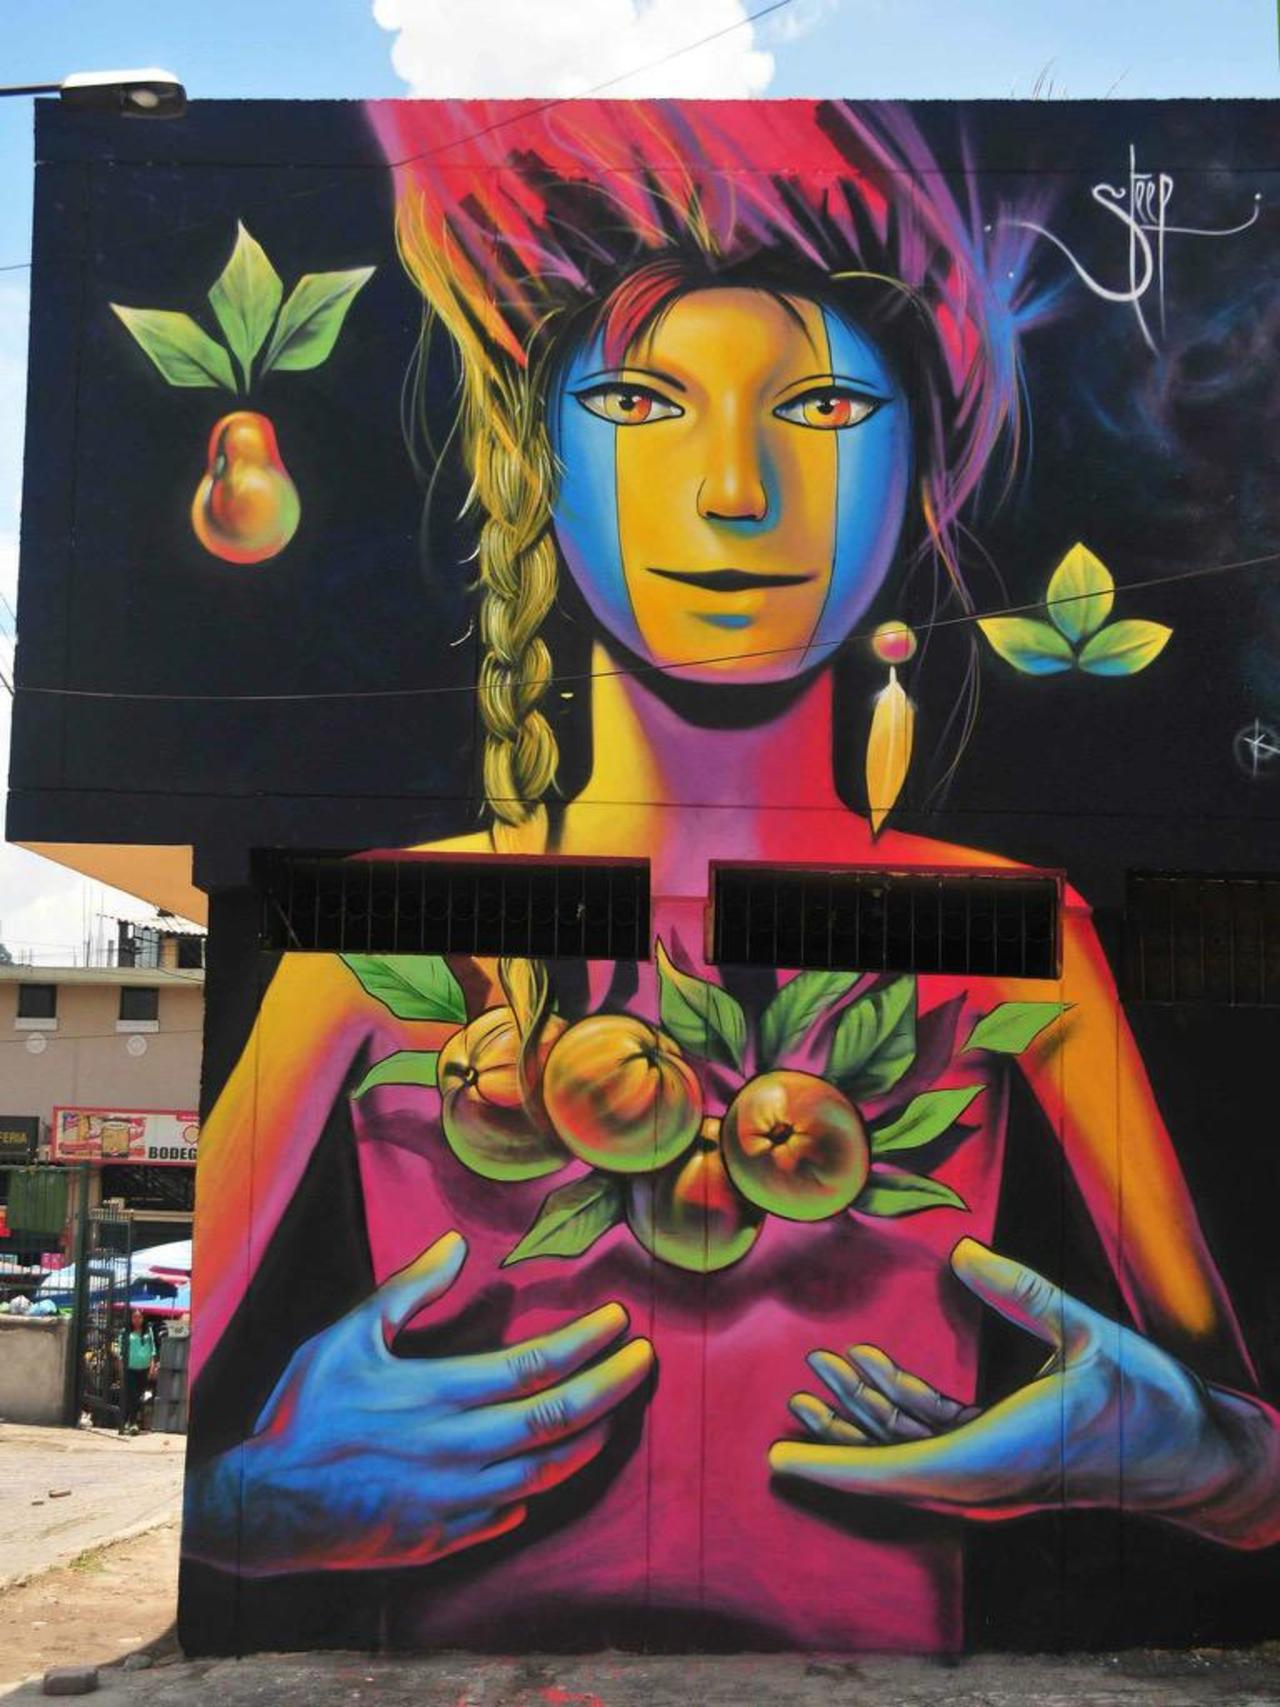 I love this: Street Art by Steep

#art #graffiti #mural #streetart http://t.co/9pQKcAsjYS MT @GoogleStreetArt